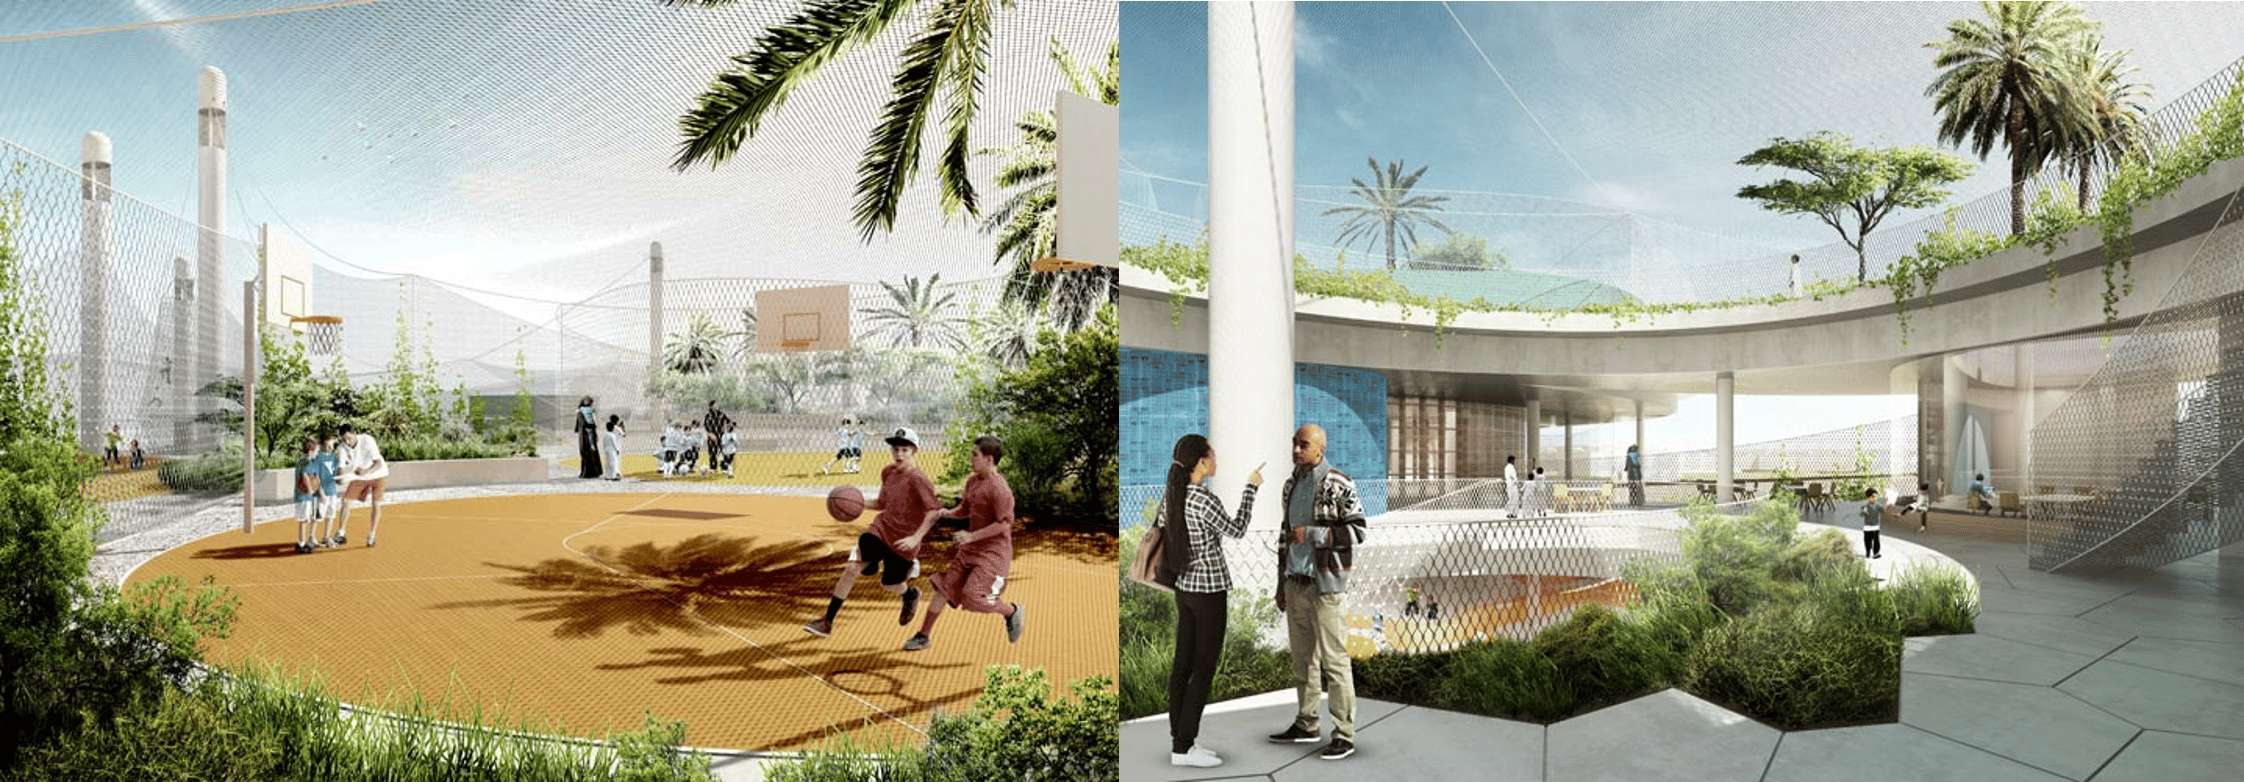 المدرسة المستدامة في دبي وكيف يمكن تطبيق الاستدامة في المدارس؟  2021